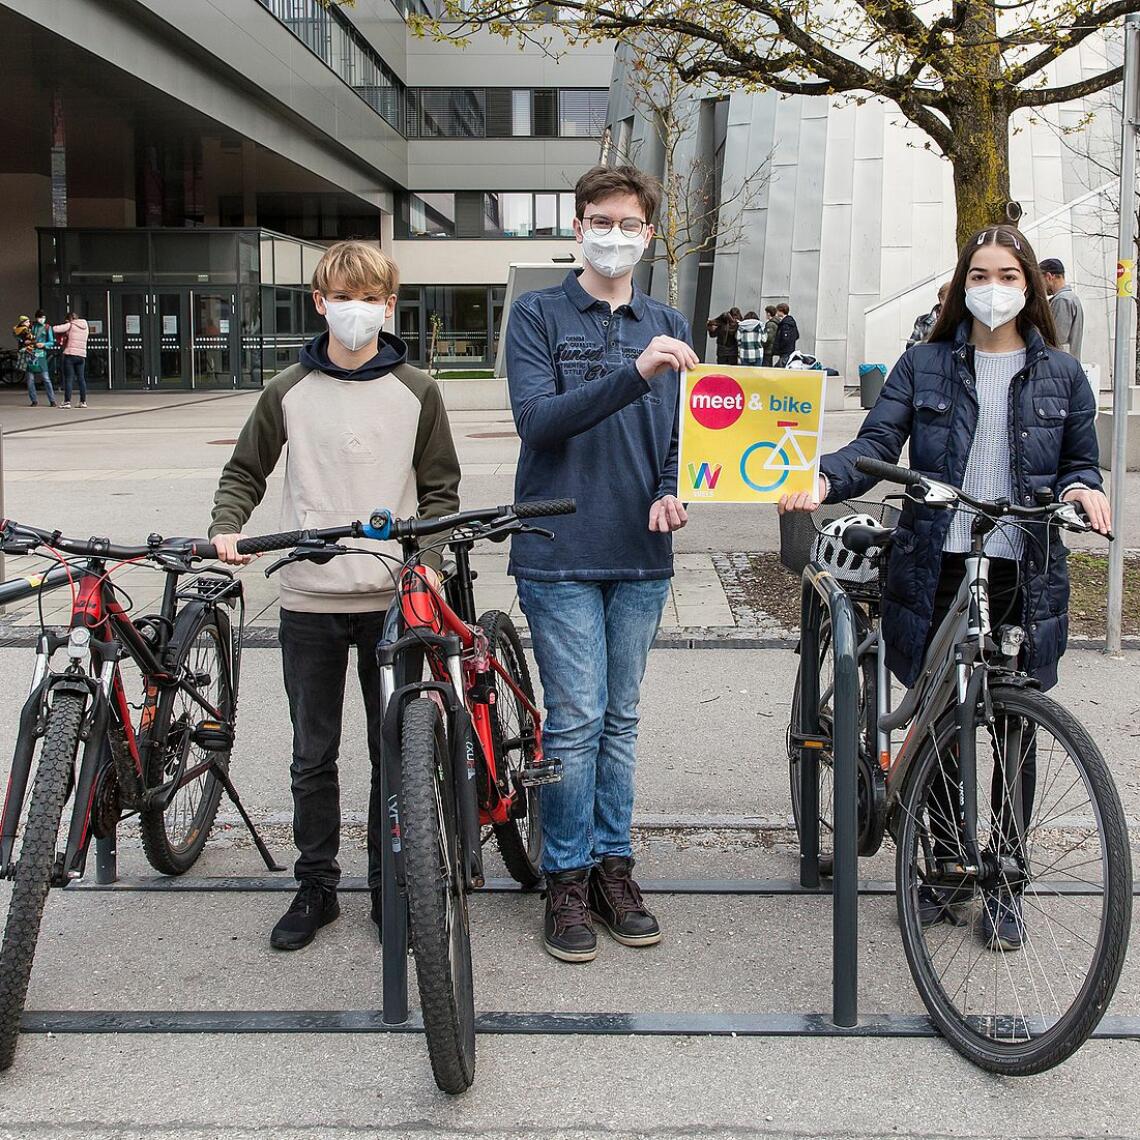 3 Schüler:innen präsentieren Fahrräder und Tafel meet&bike